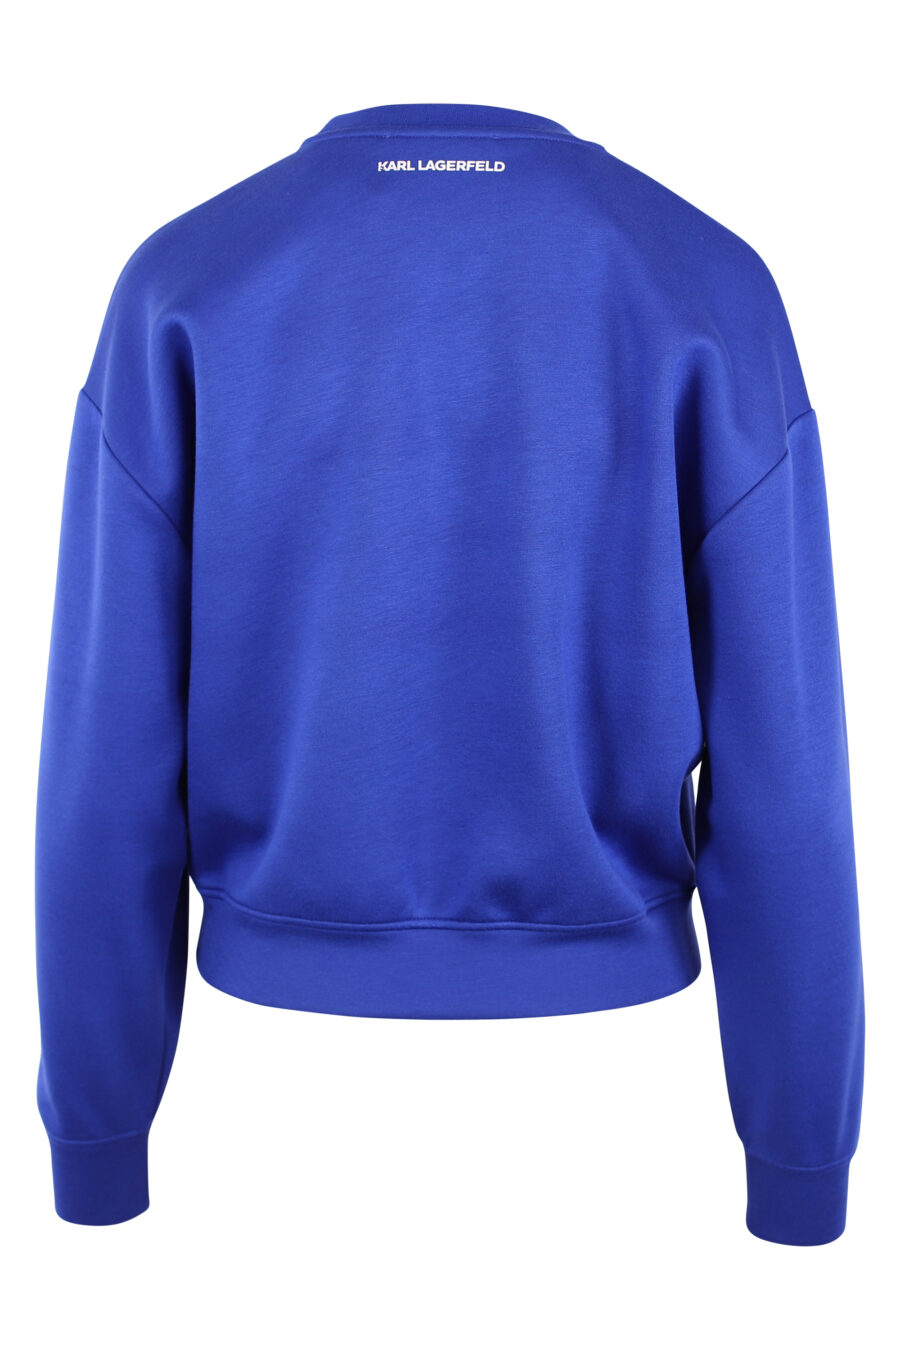 Blaues Sweatshirt mit Kreuzschleifenlogo - IMG 6149